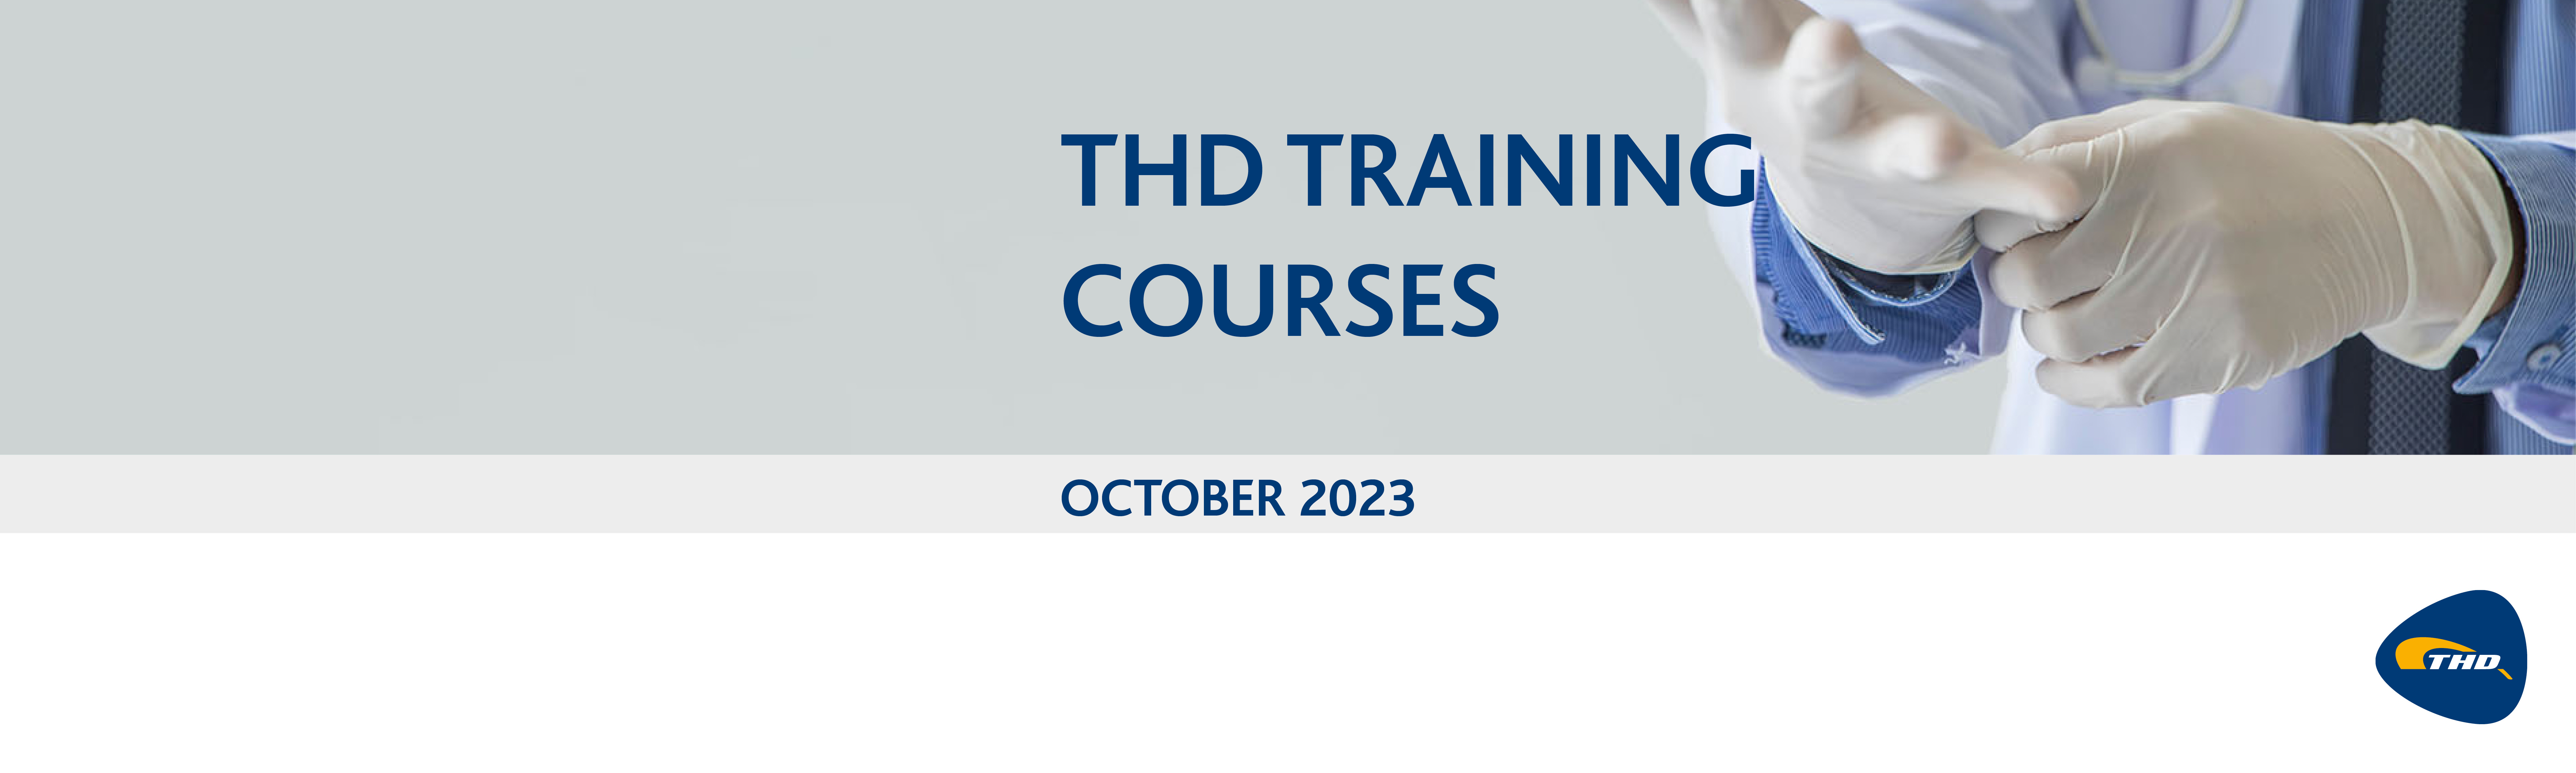 THD Webinars in October 2023